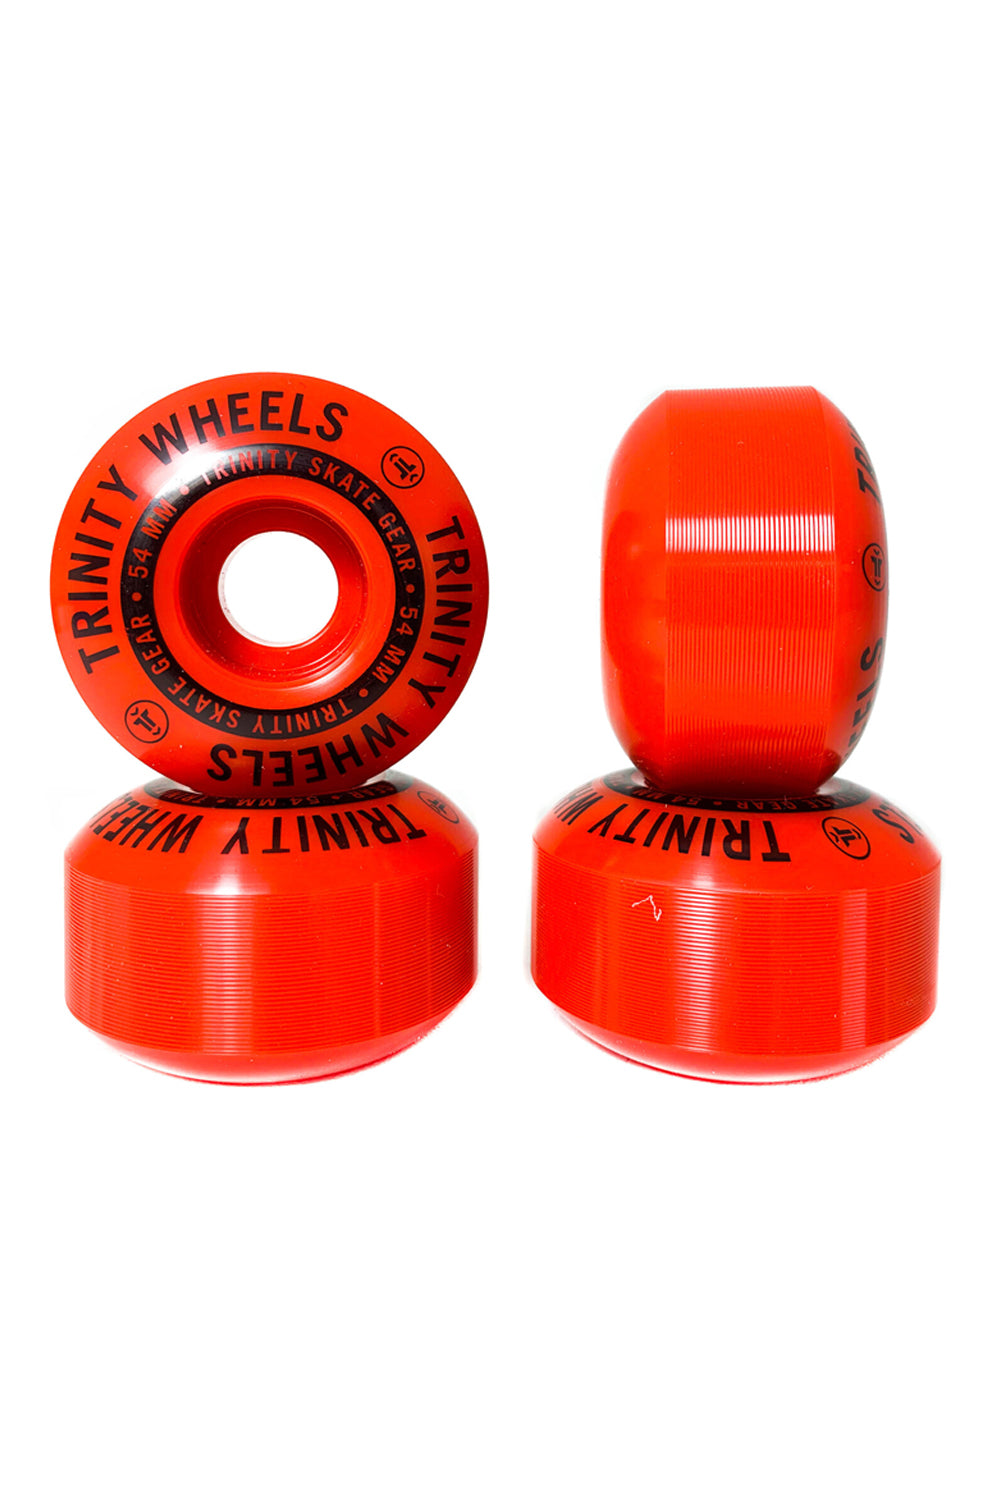 Trinity Skate Wheels